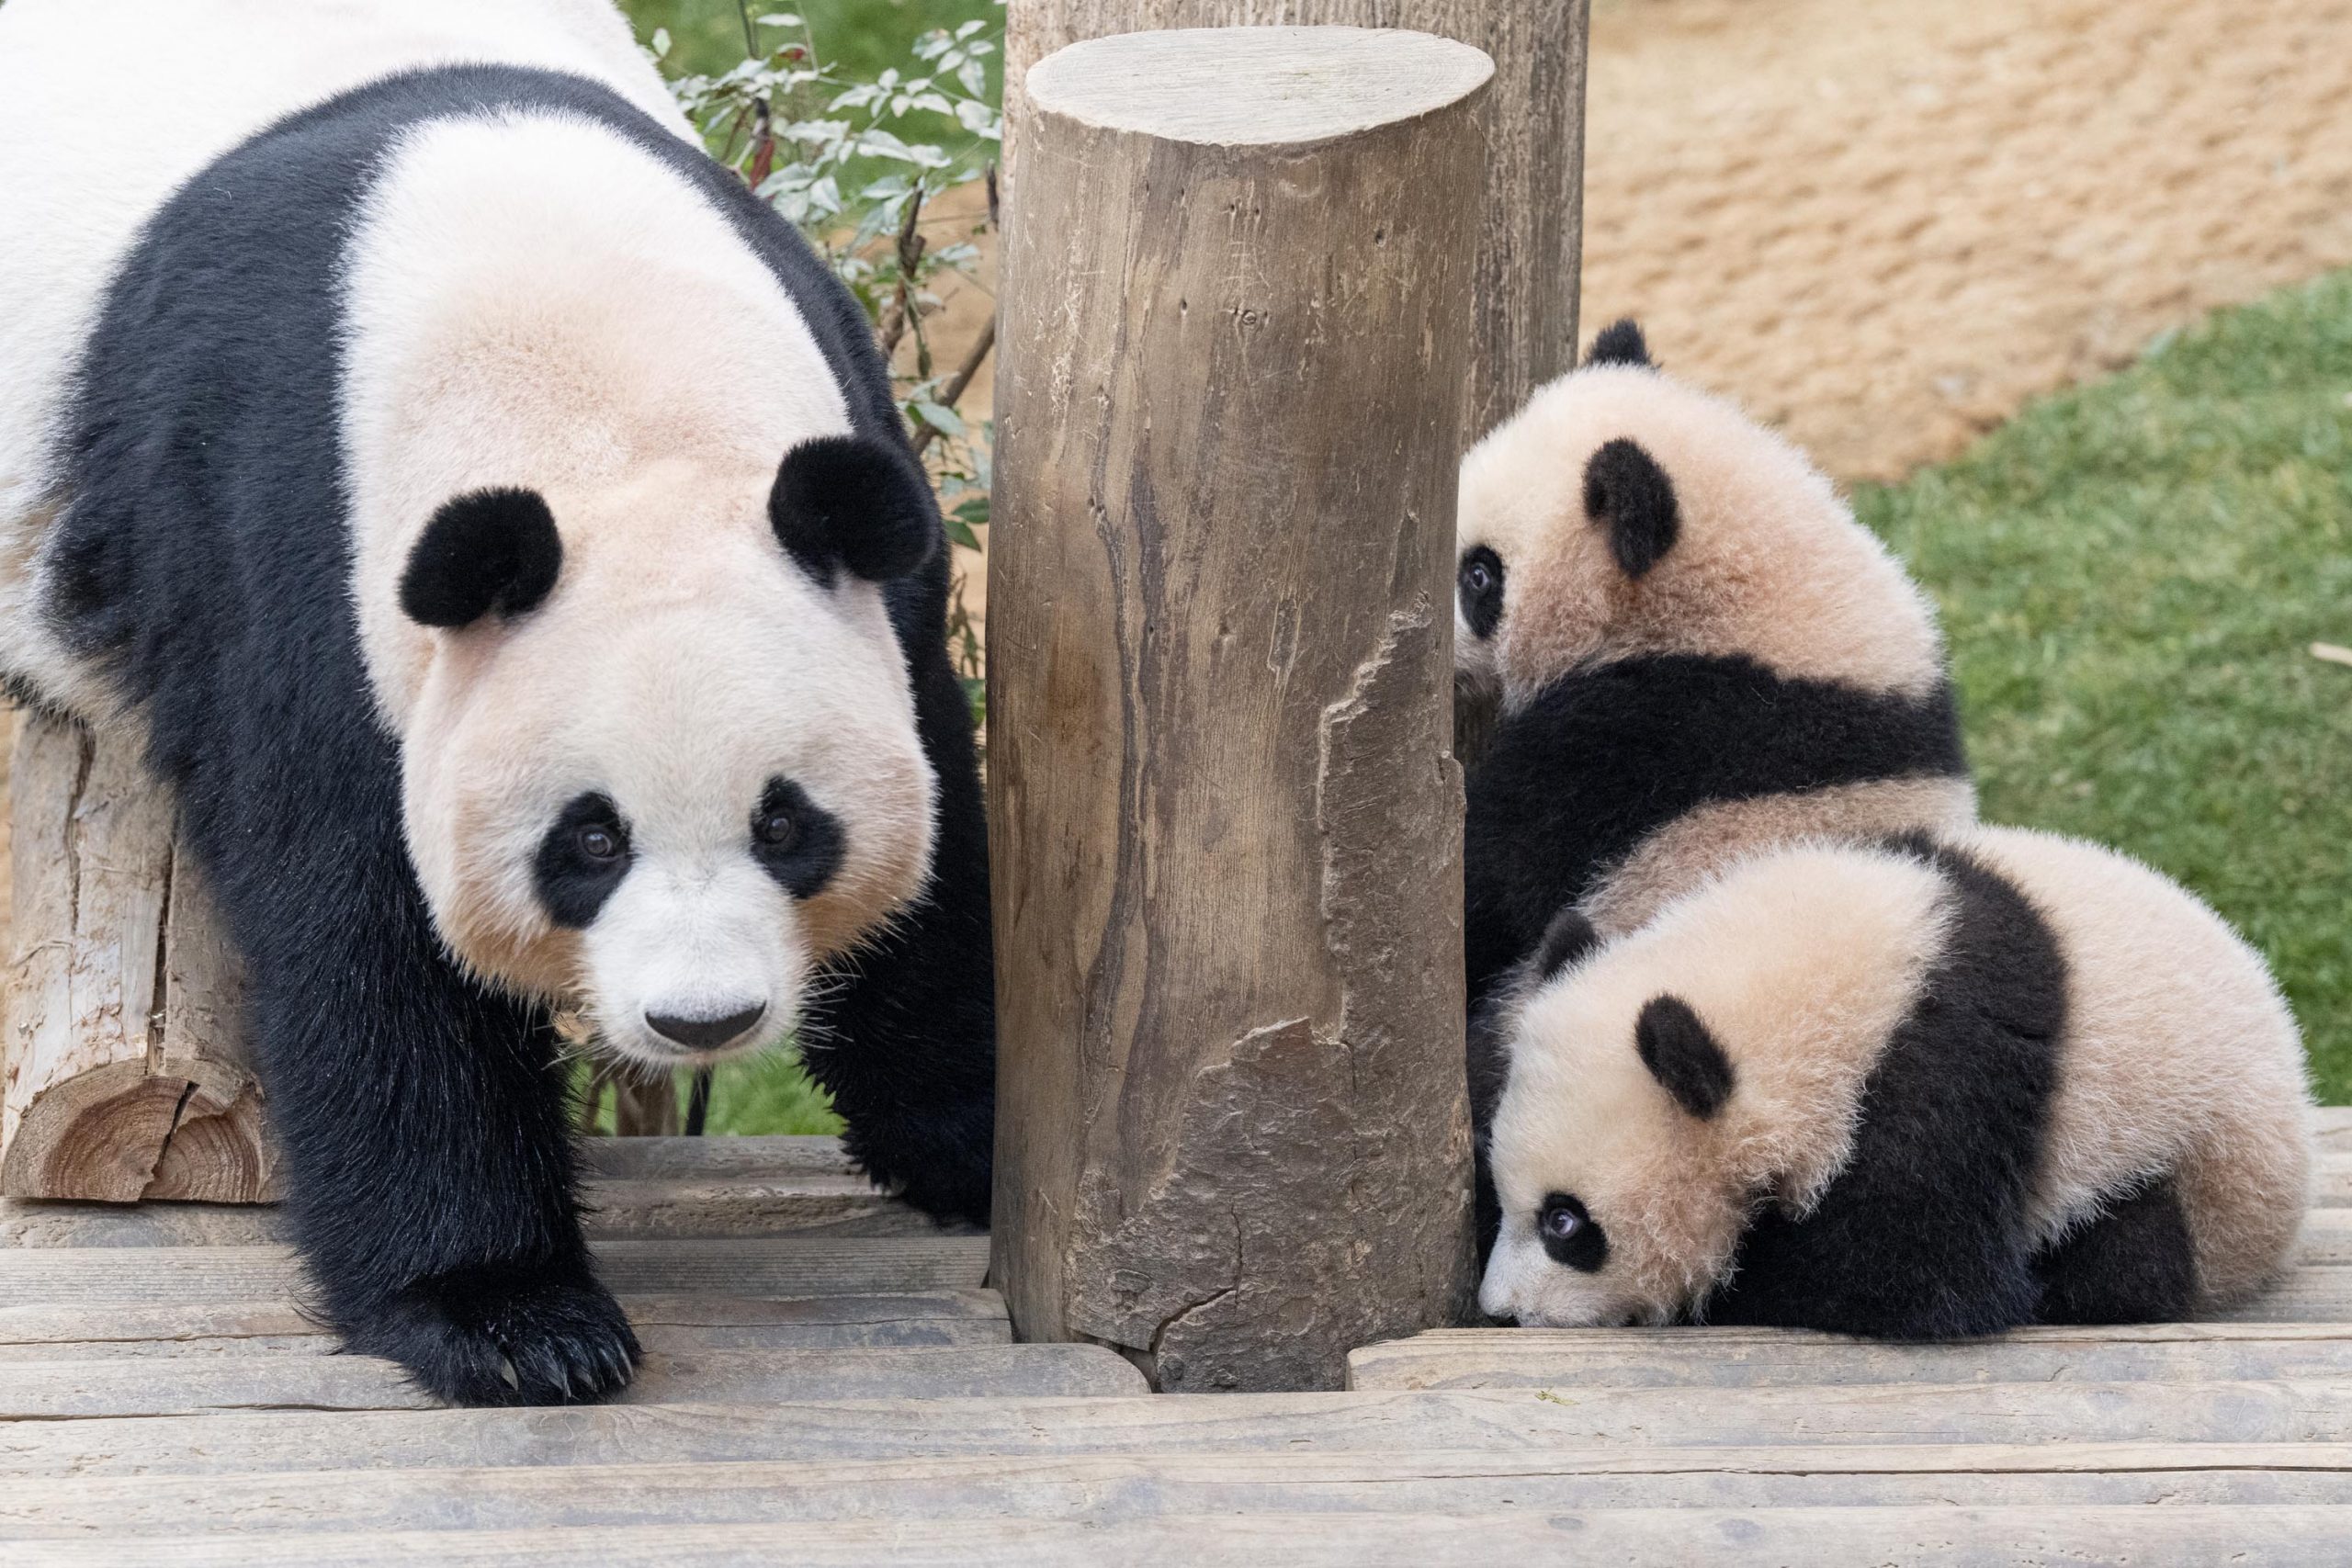 On Jan. 10, what does a panda ear taste like?